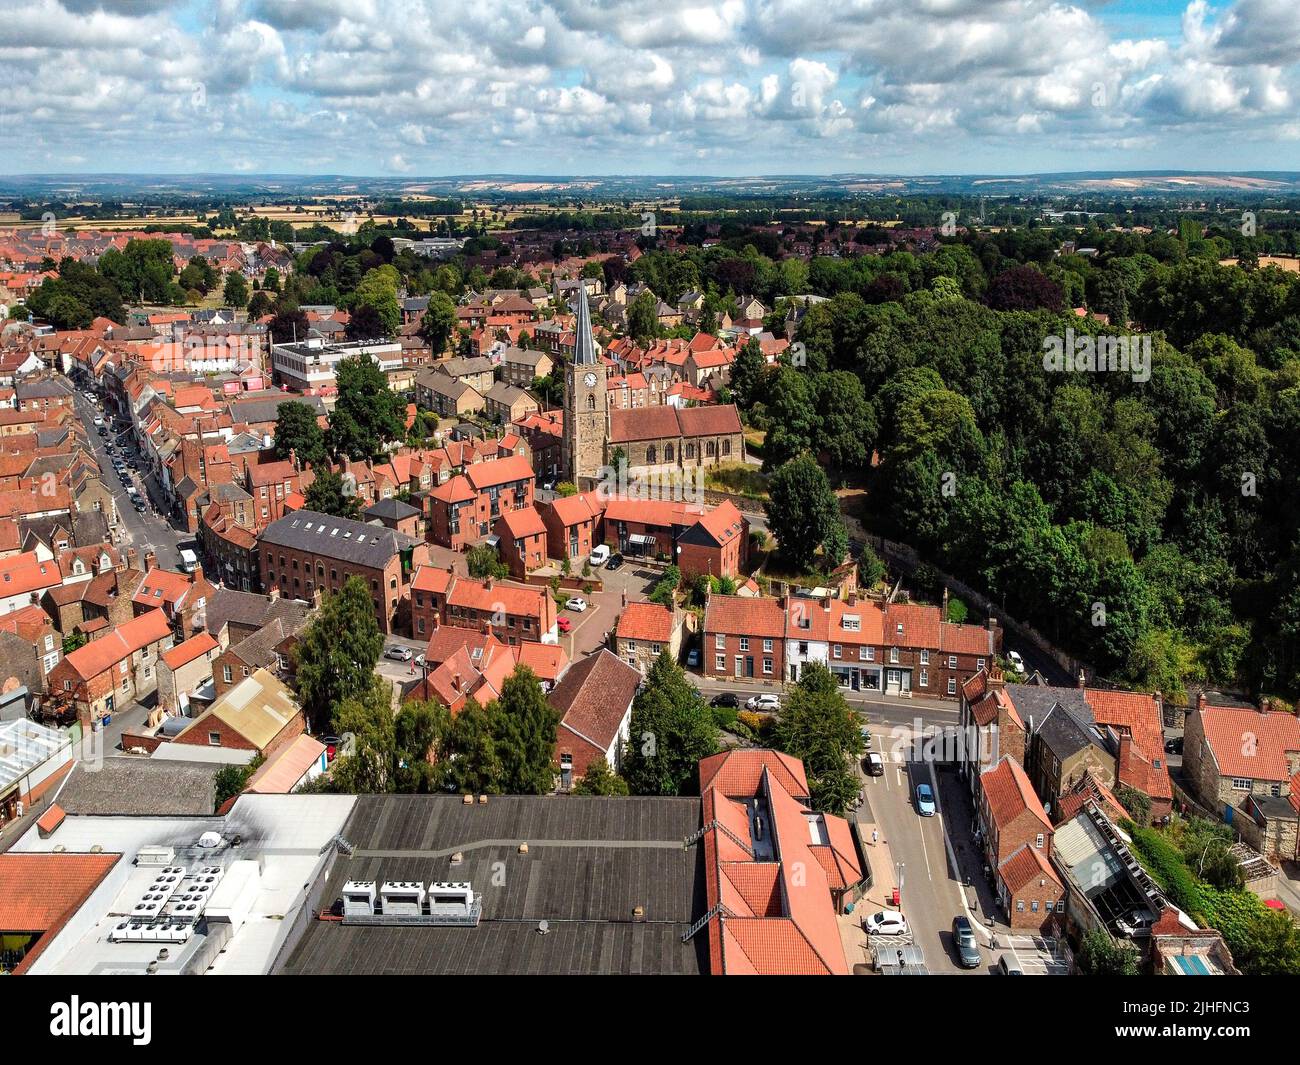 Vista aerea della città di mercato di Malton nel North Yorkshire nel nord-est dell'Inghilterra. Foto Stock